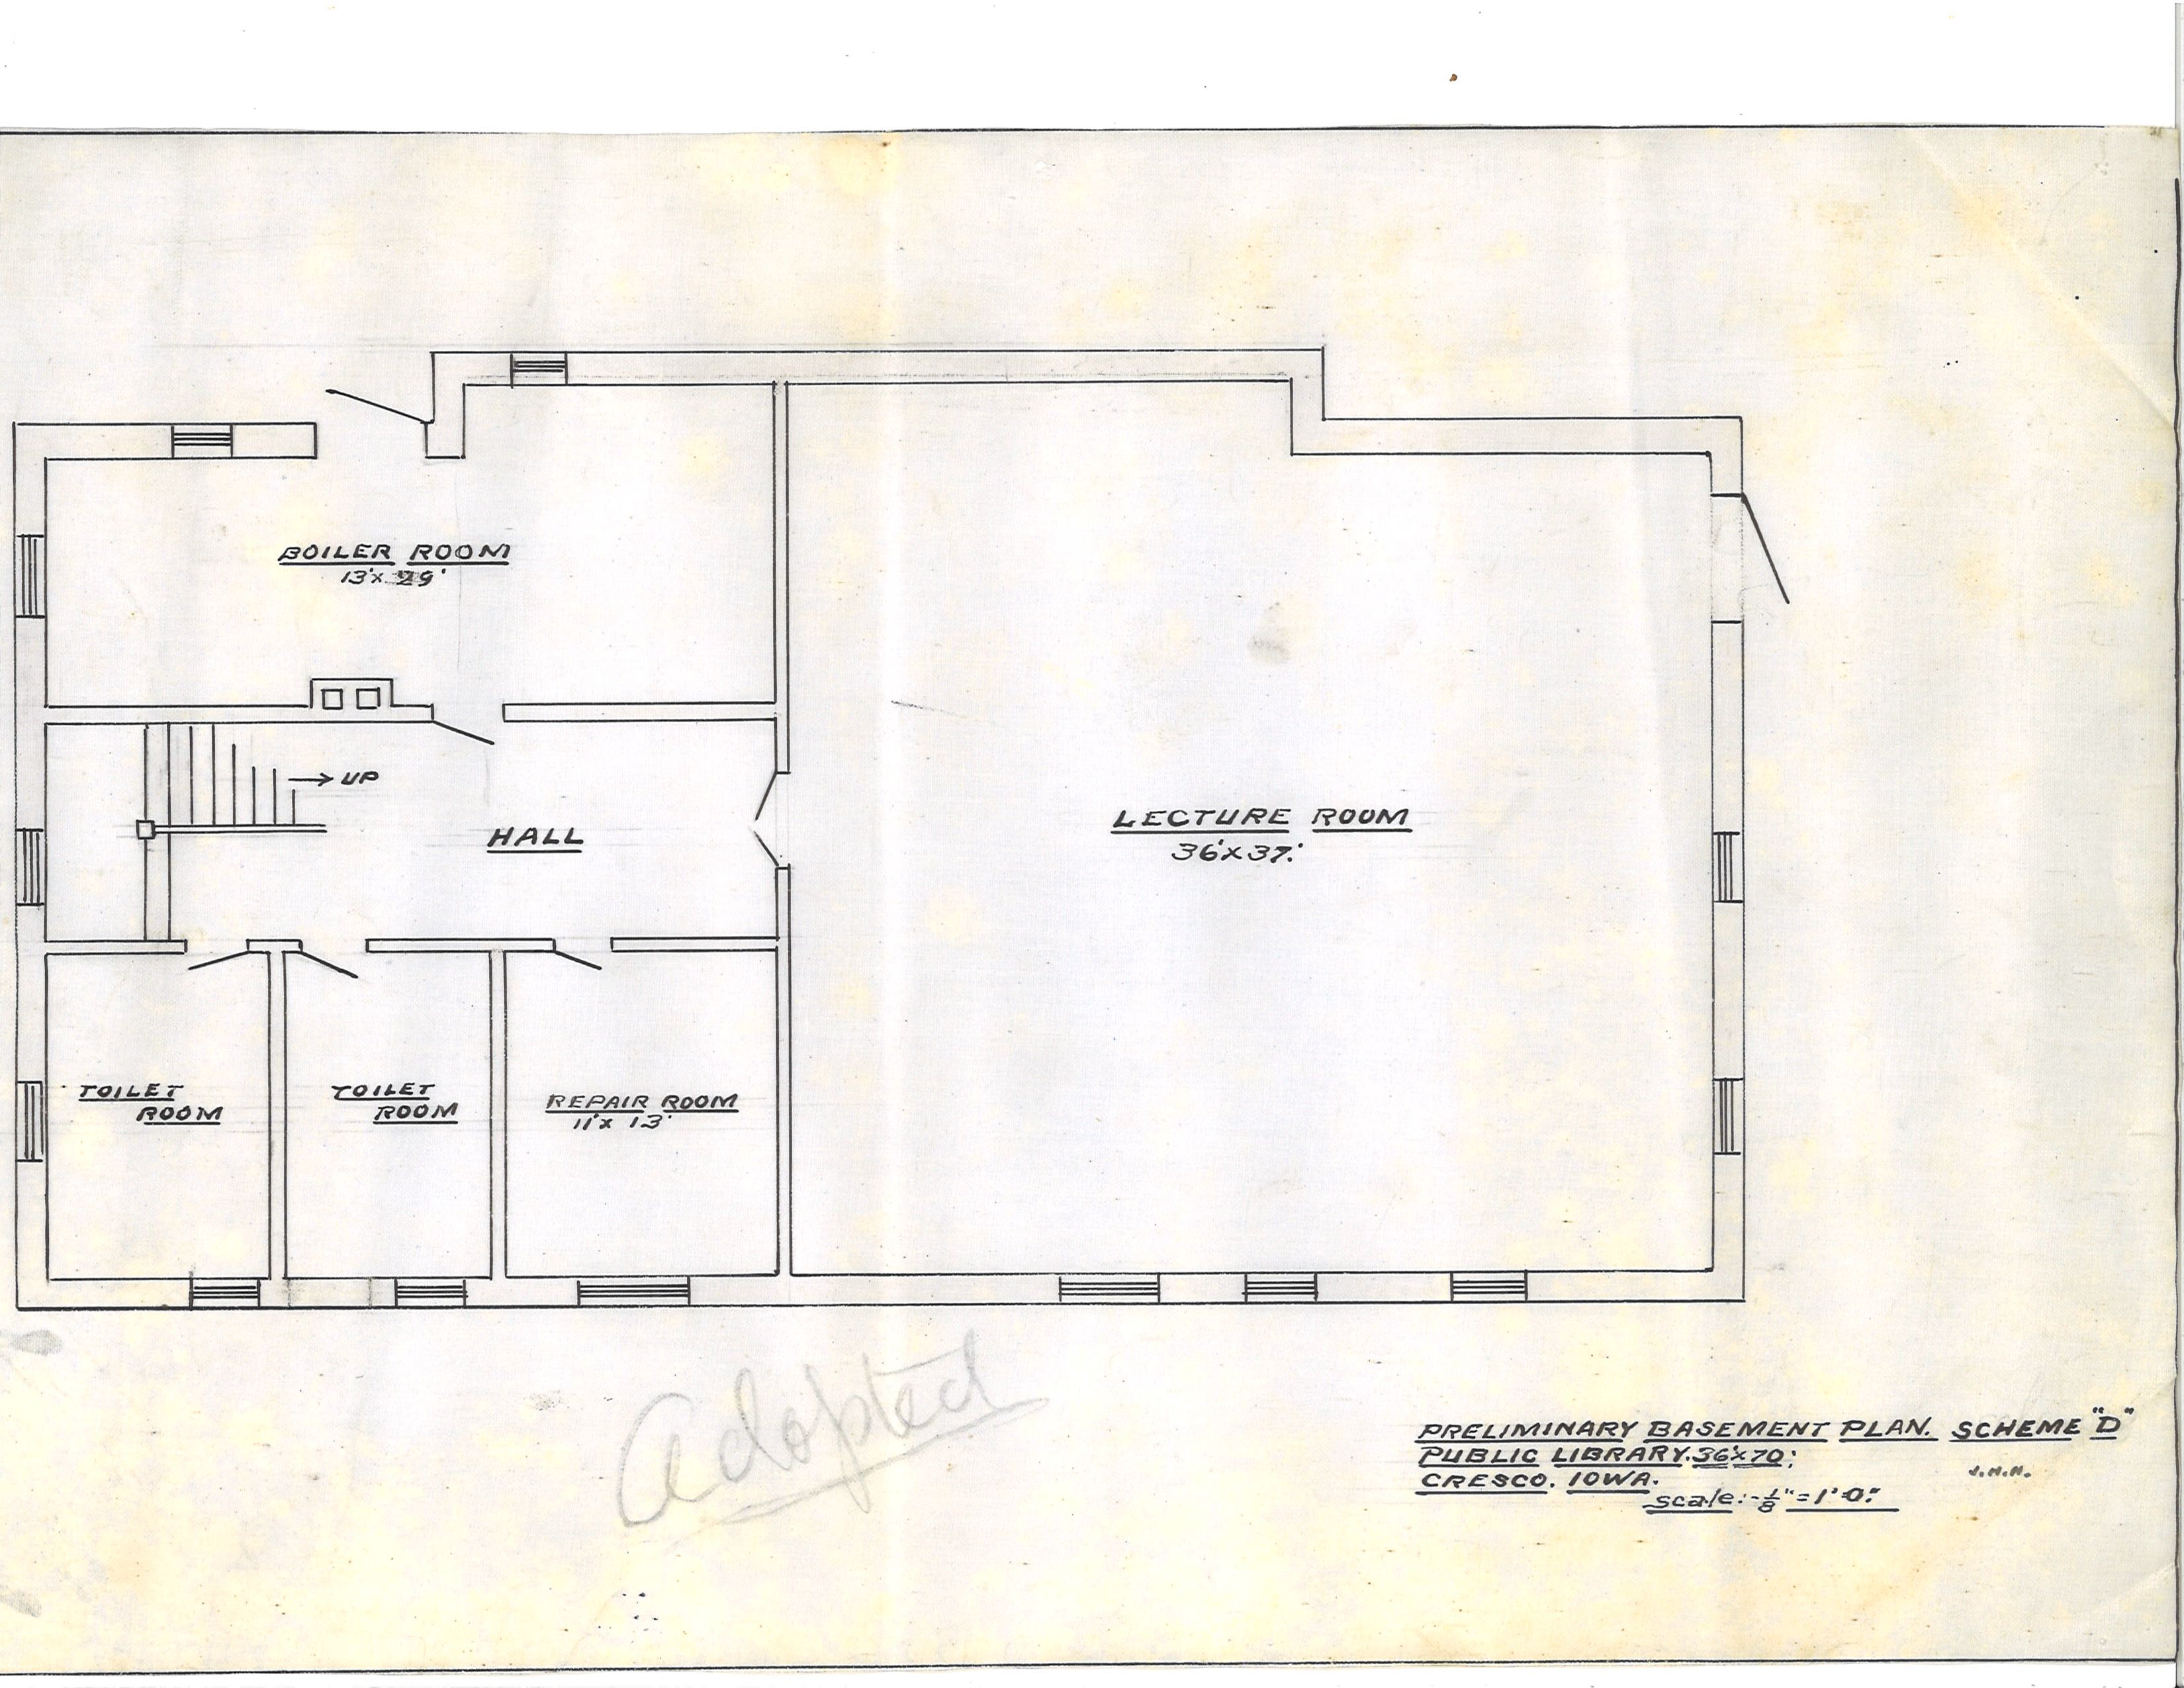 Downstairs Floor Plan.jpg